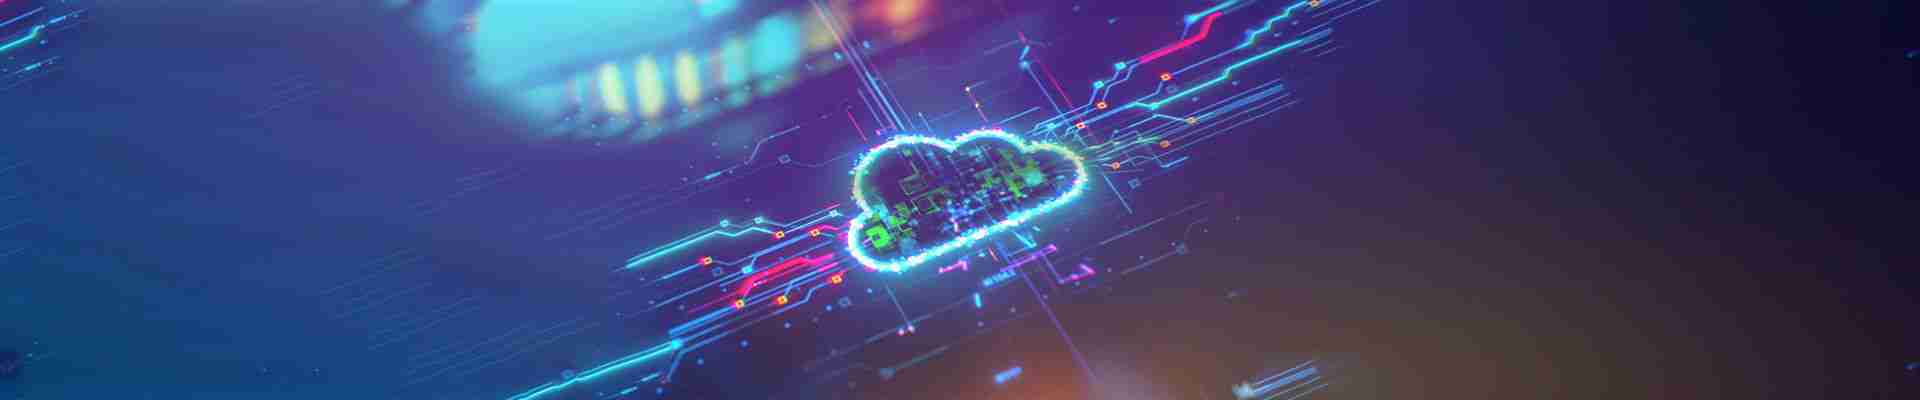 Cloud Storage: Wie funktioniert die Datenspeicherung in der Cloud?